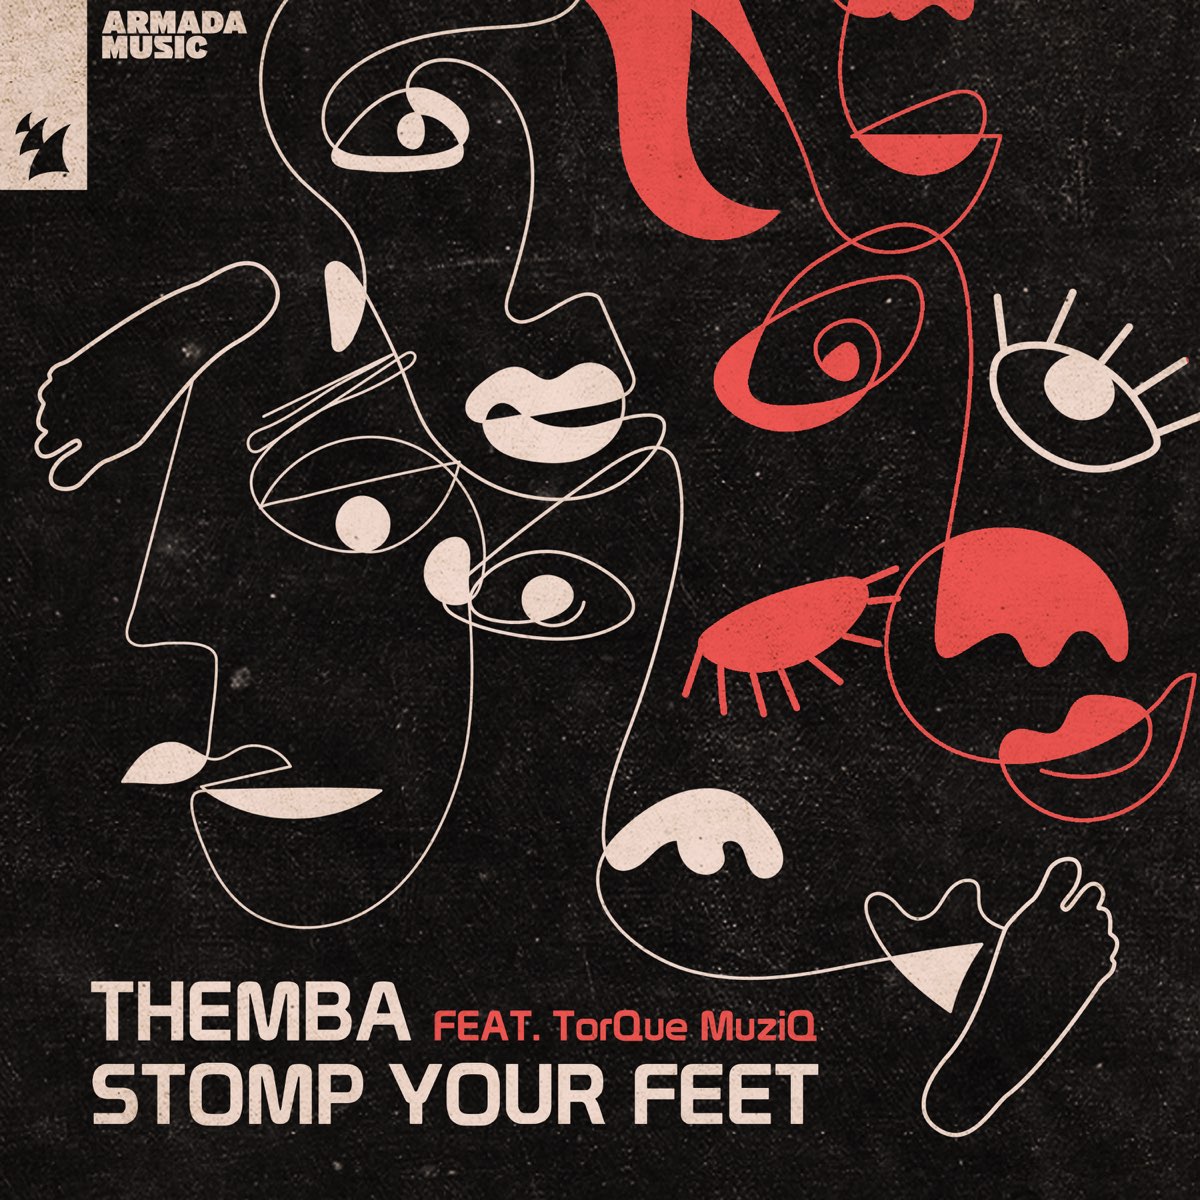 Feet feat. Themba Music. Muziq 2022.